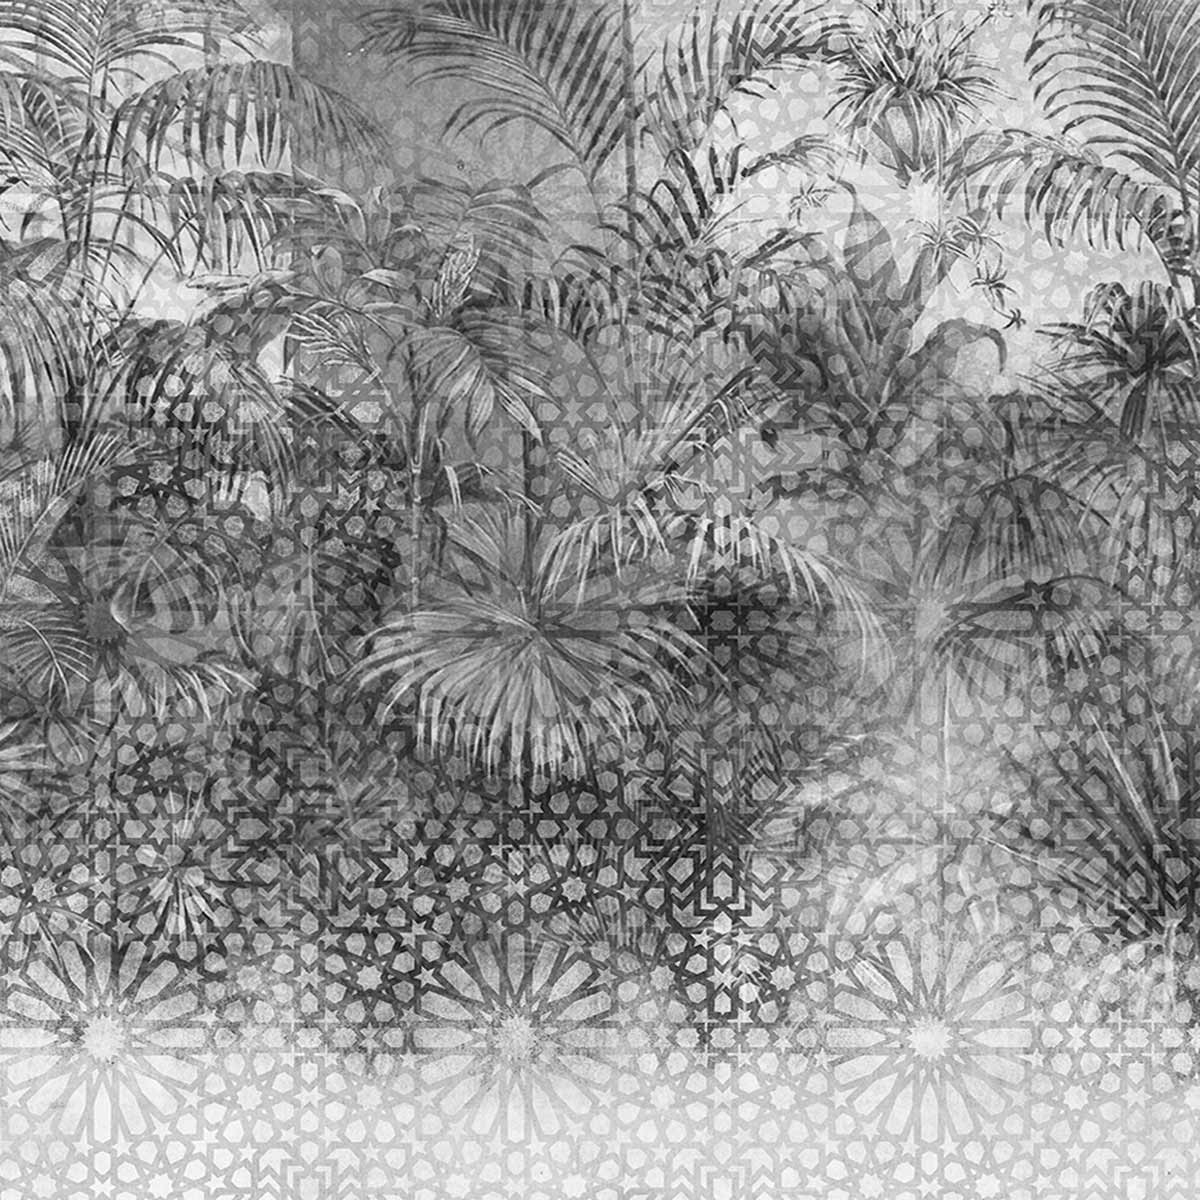 Papier peint au dessin d'une forêt tropicale au crayon pour